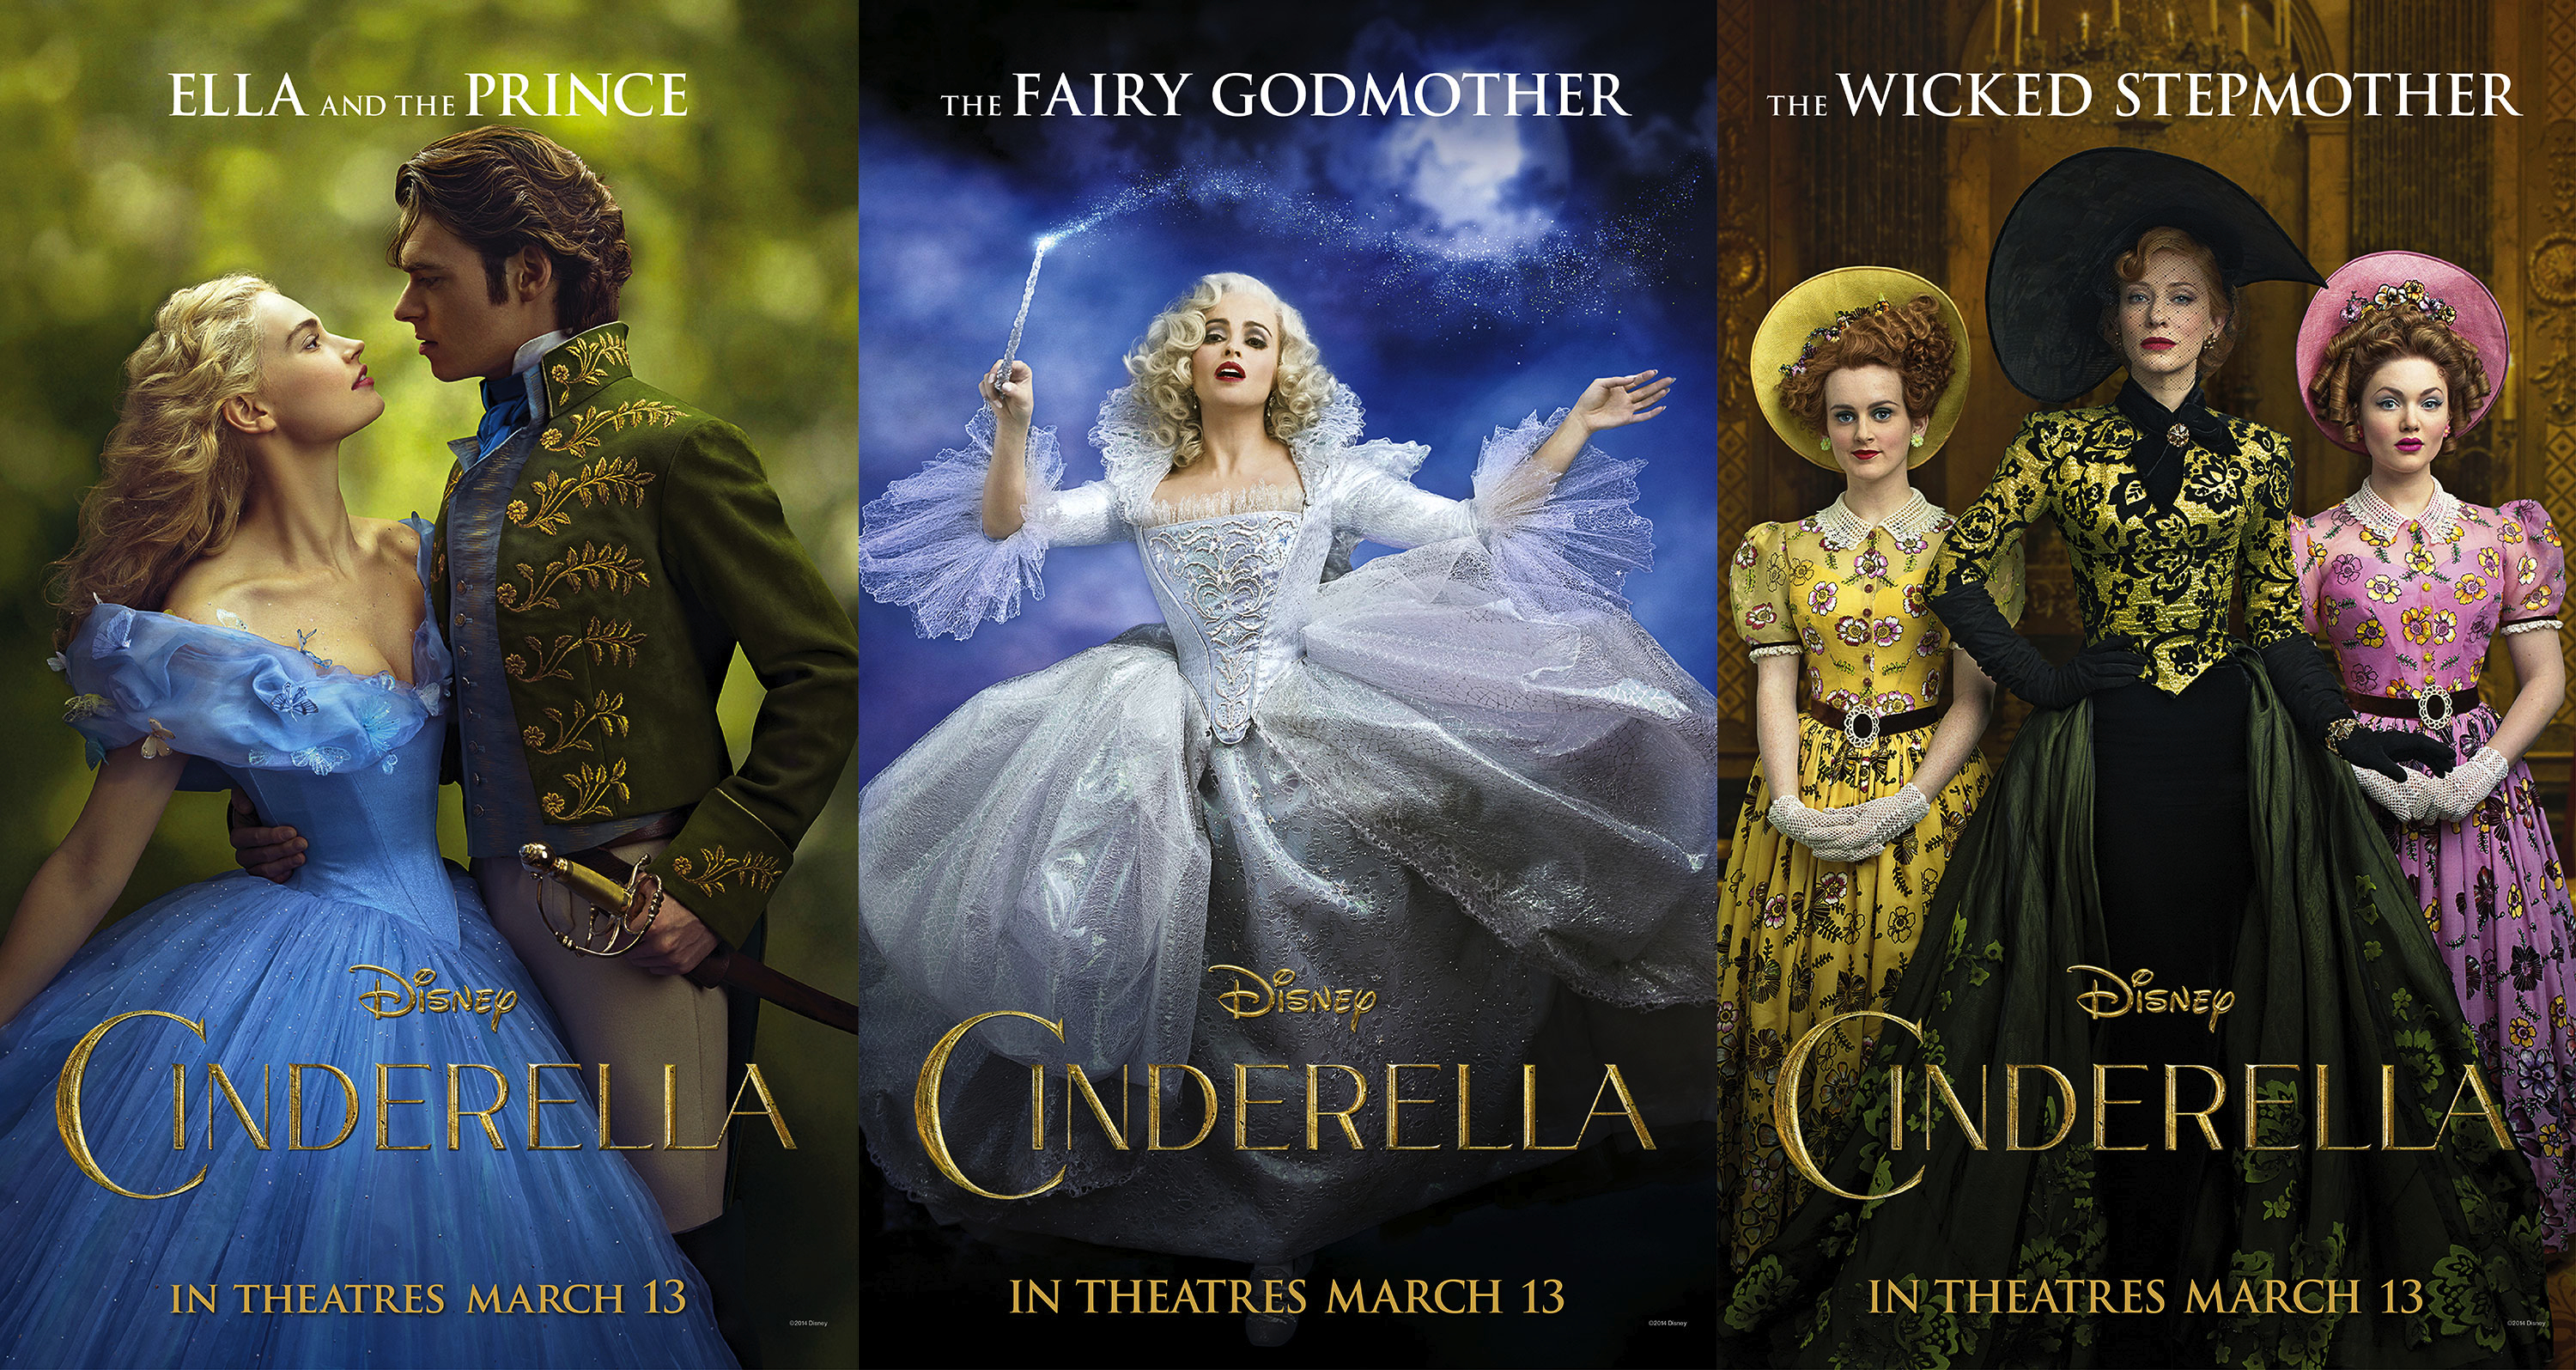 Disney Cinderella 2015 Posters by nickelbackloverxoxox on DeviantArt